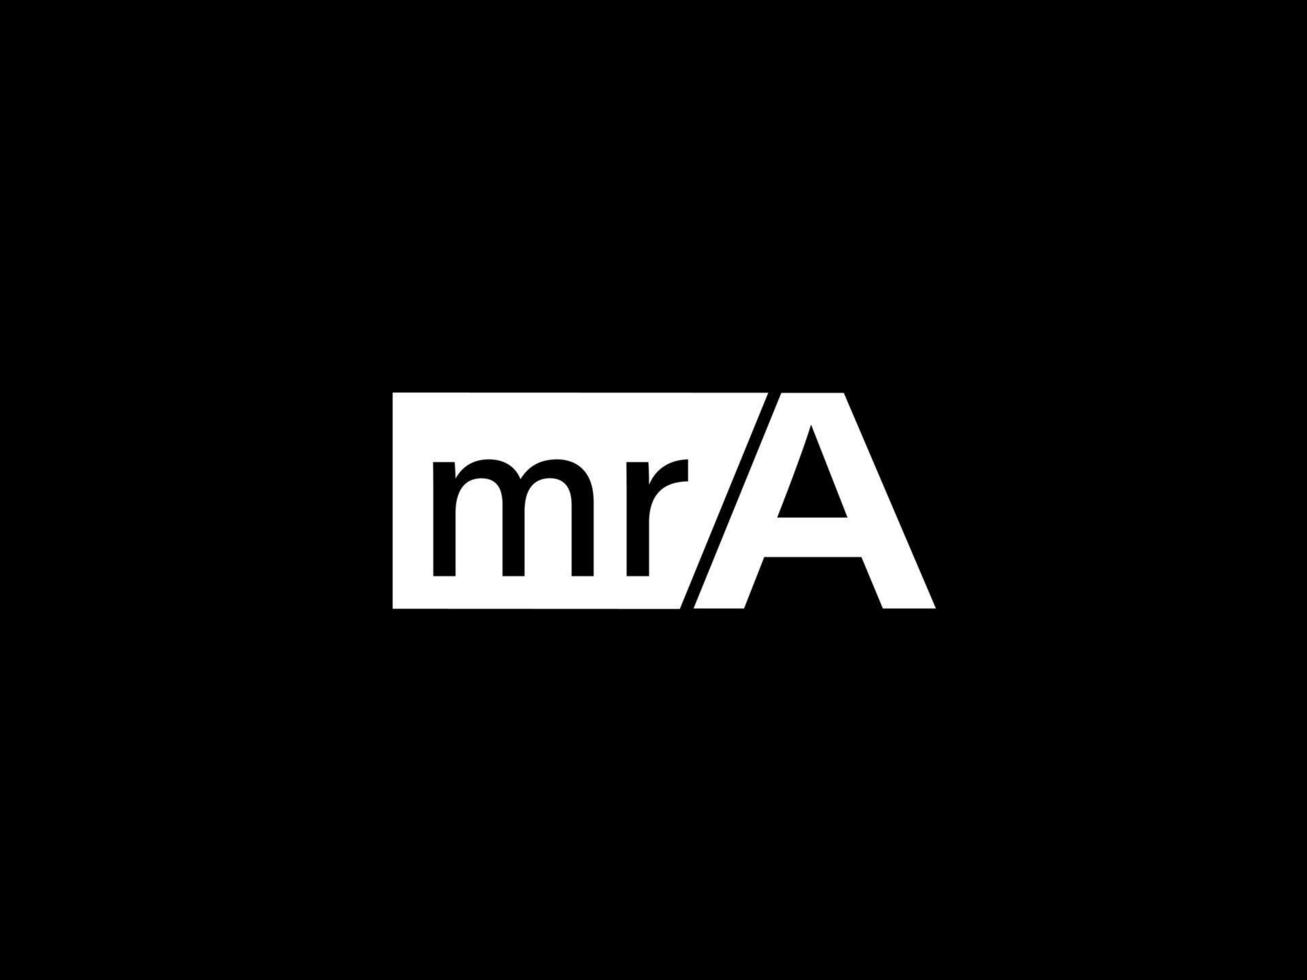 mra-Logo und Grafikdesign Vektorgrafiken, Symbole isoliert auf schwarzem Hintergrund vektor